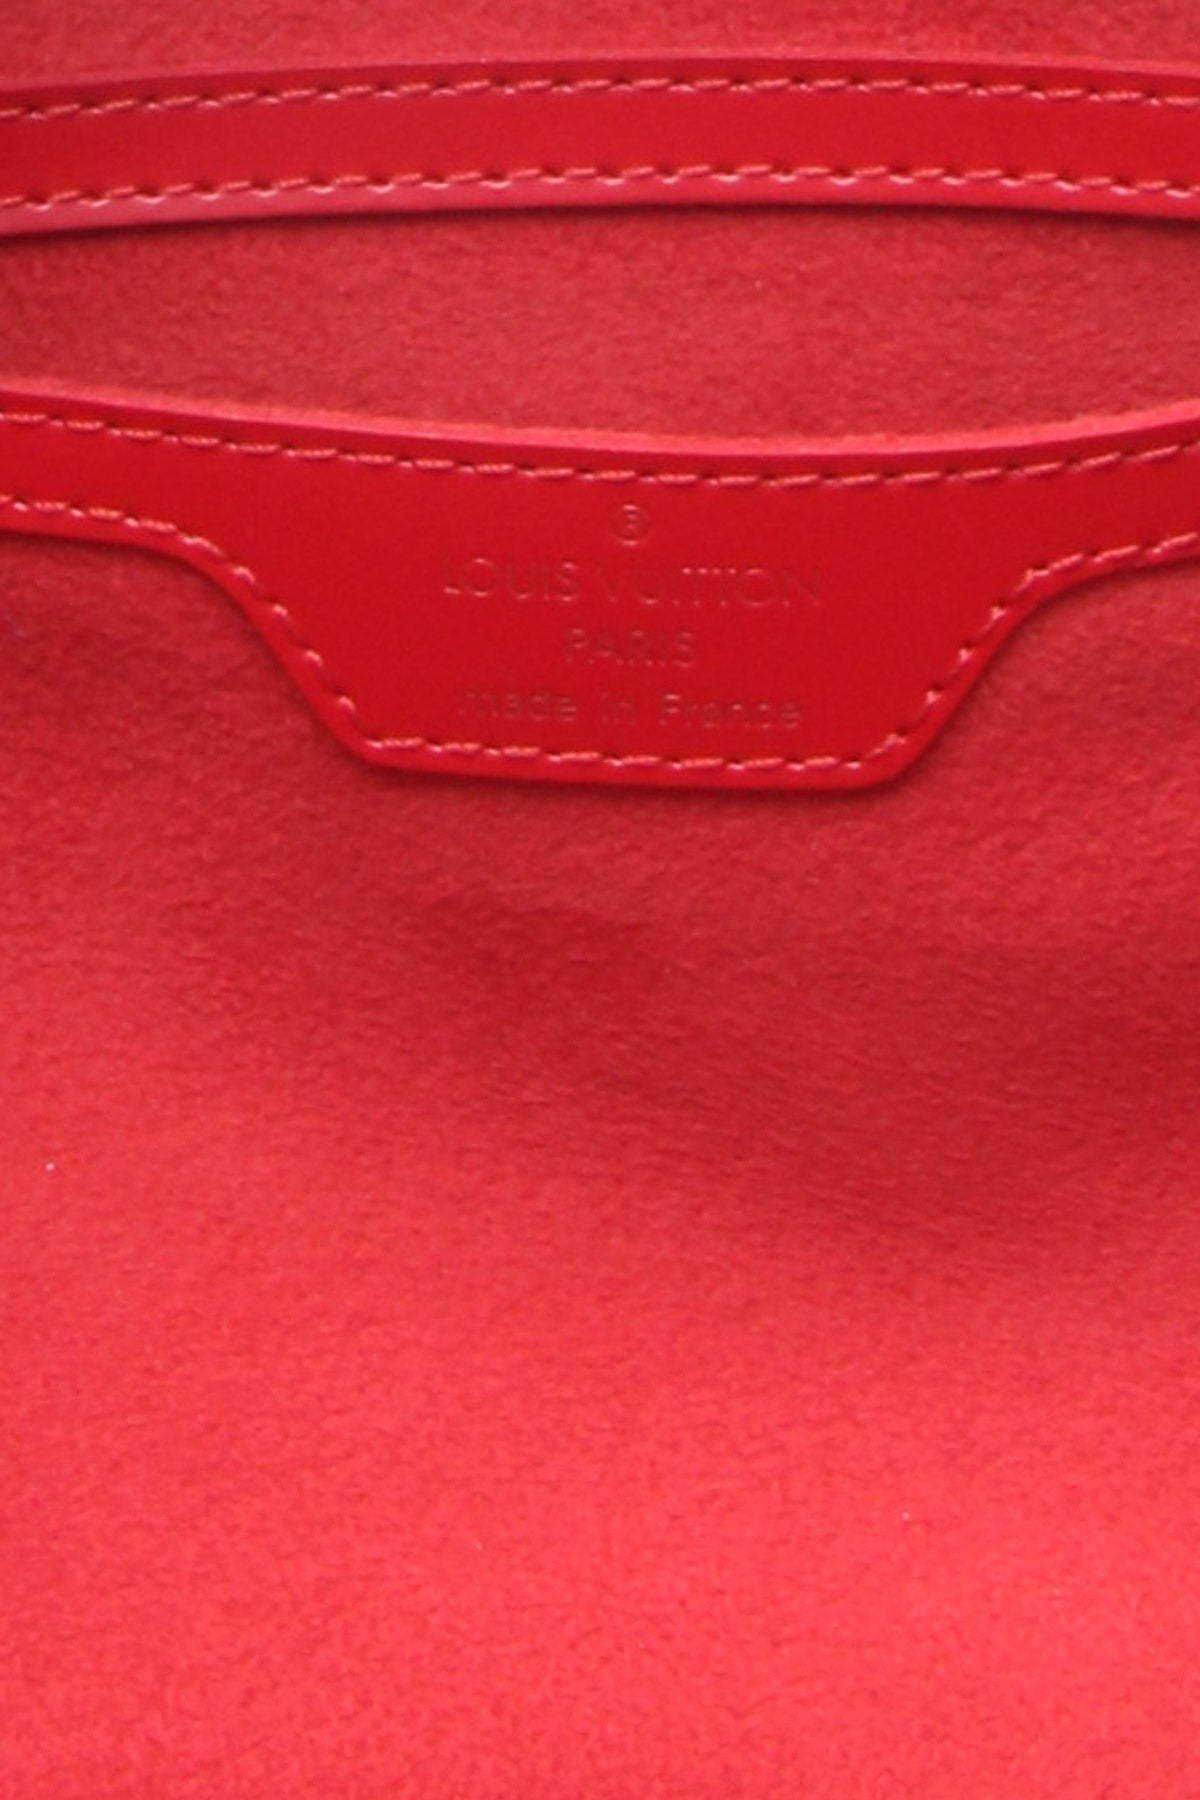 Louis Vuitton, Bags, Authentic Lv Epi Papillon